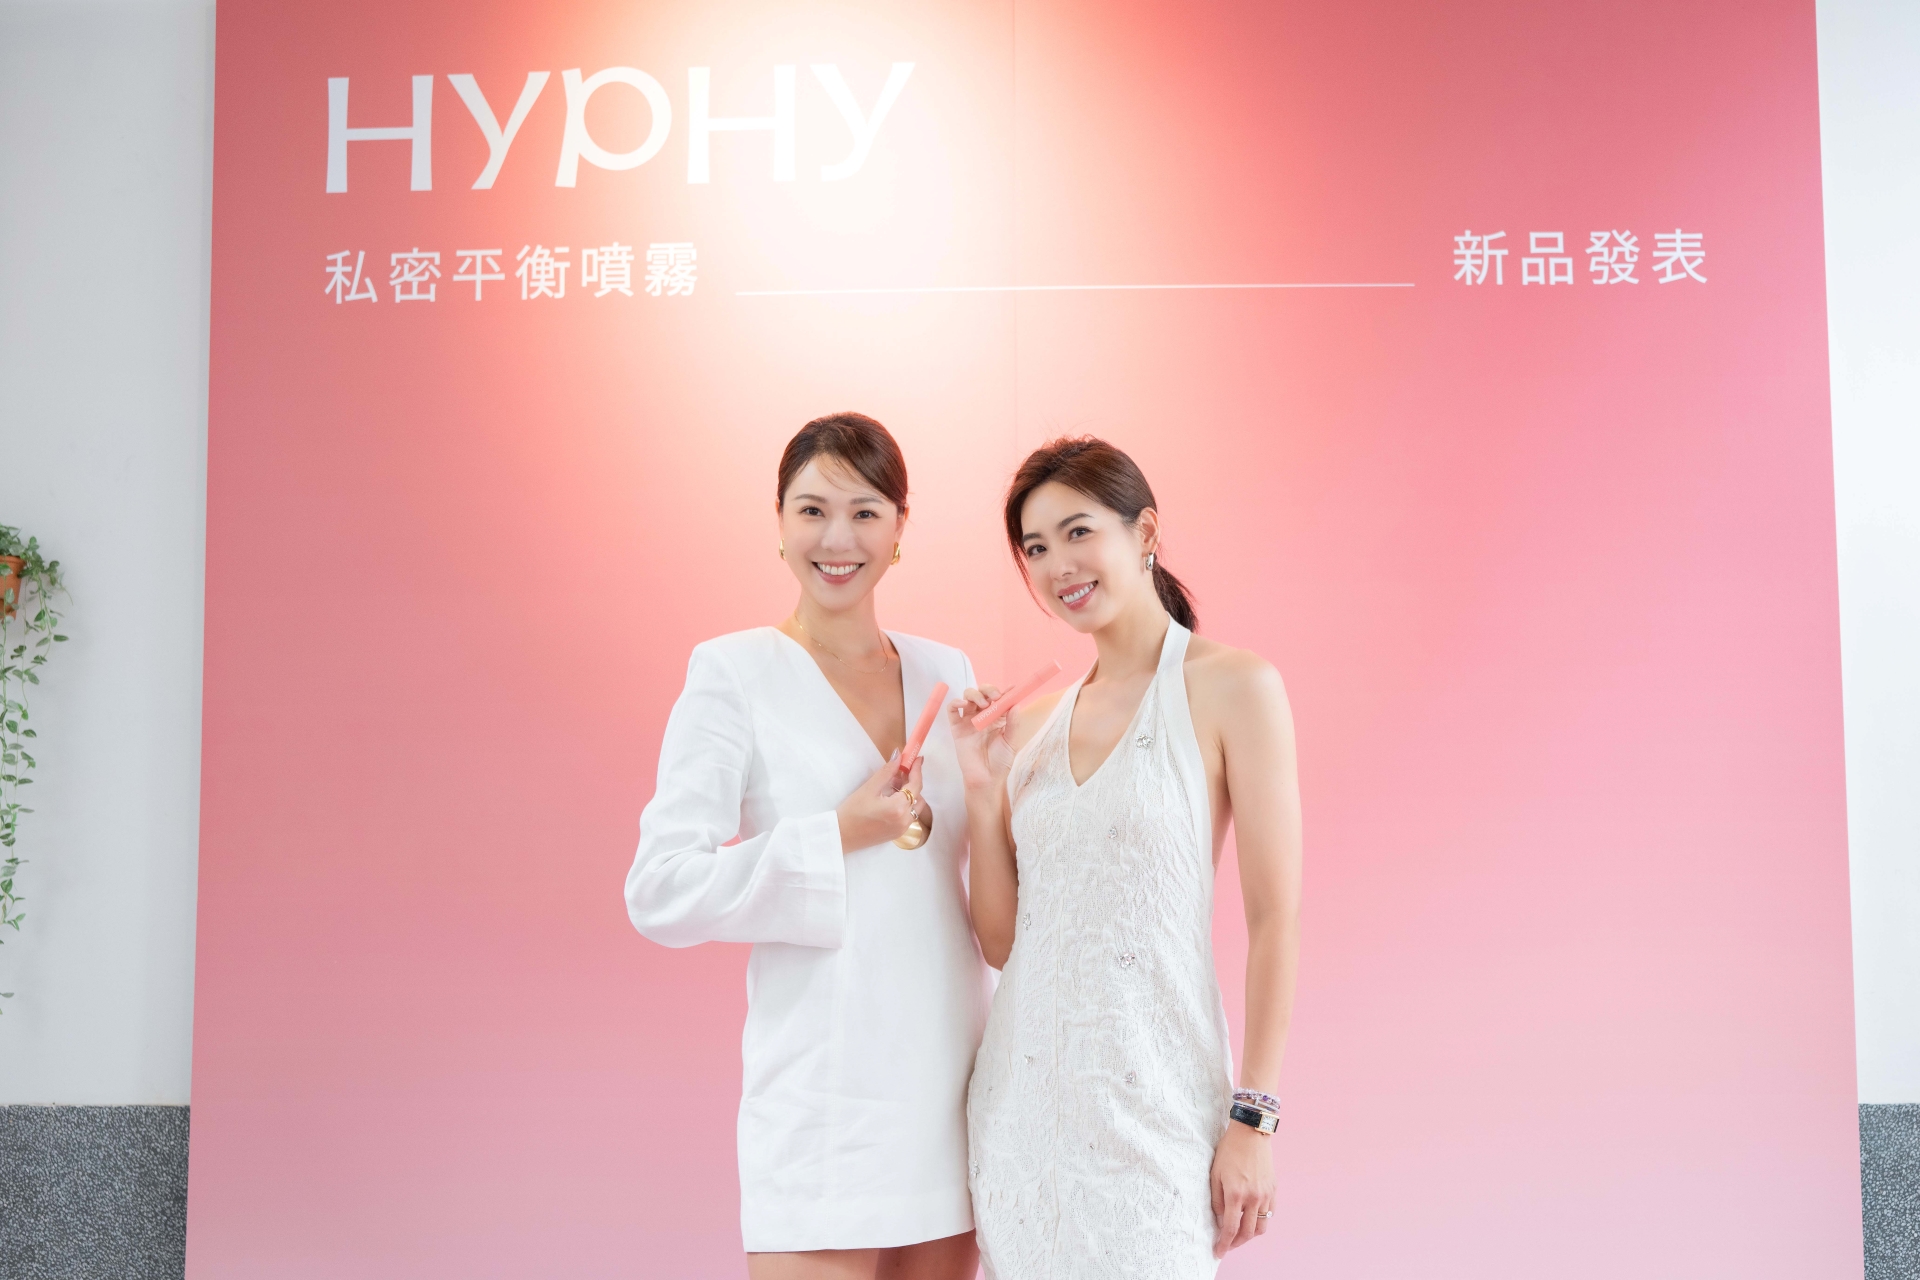 名模林可彤、林又立共同創立品牌HYPHY推出私密平衡噴霧。圖/HYPHY 提供